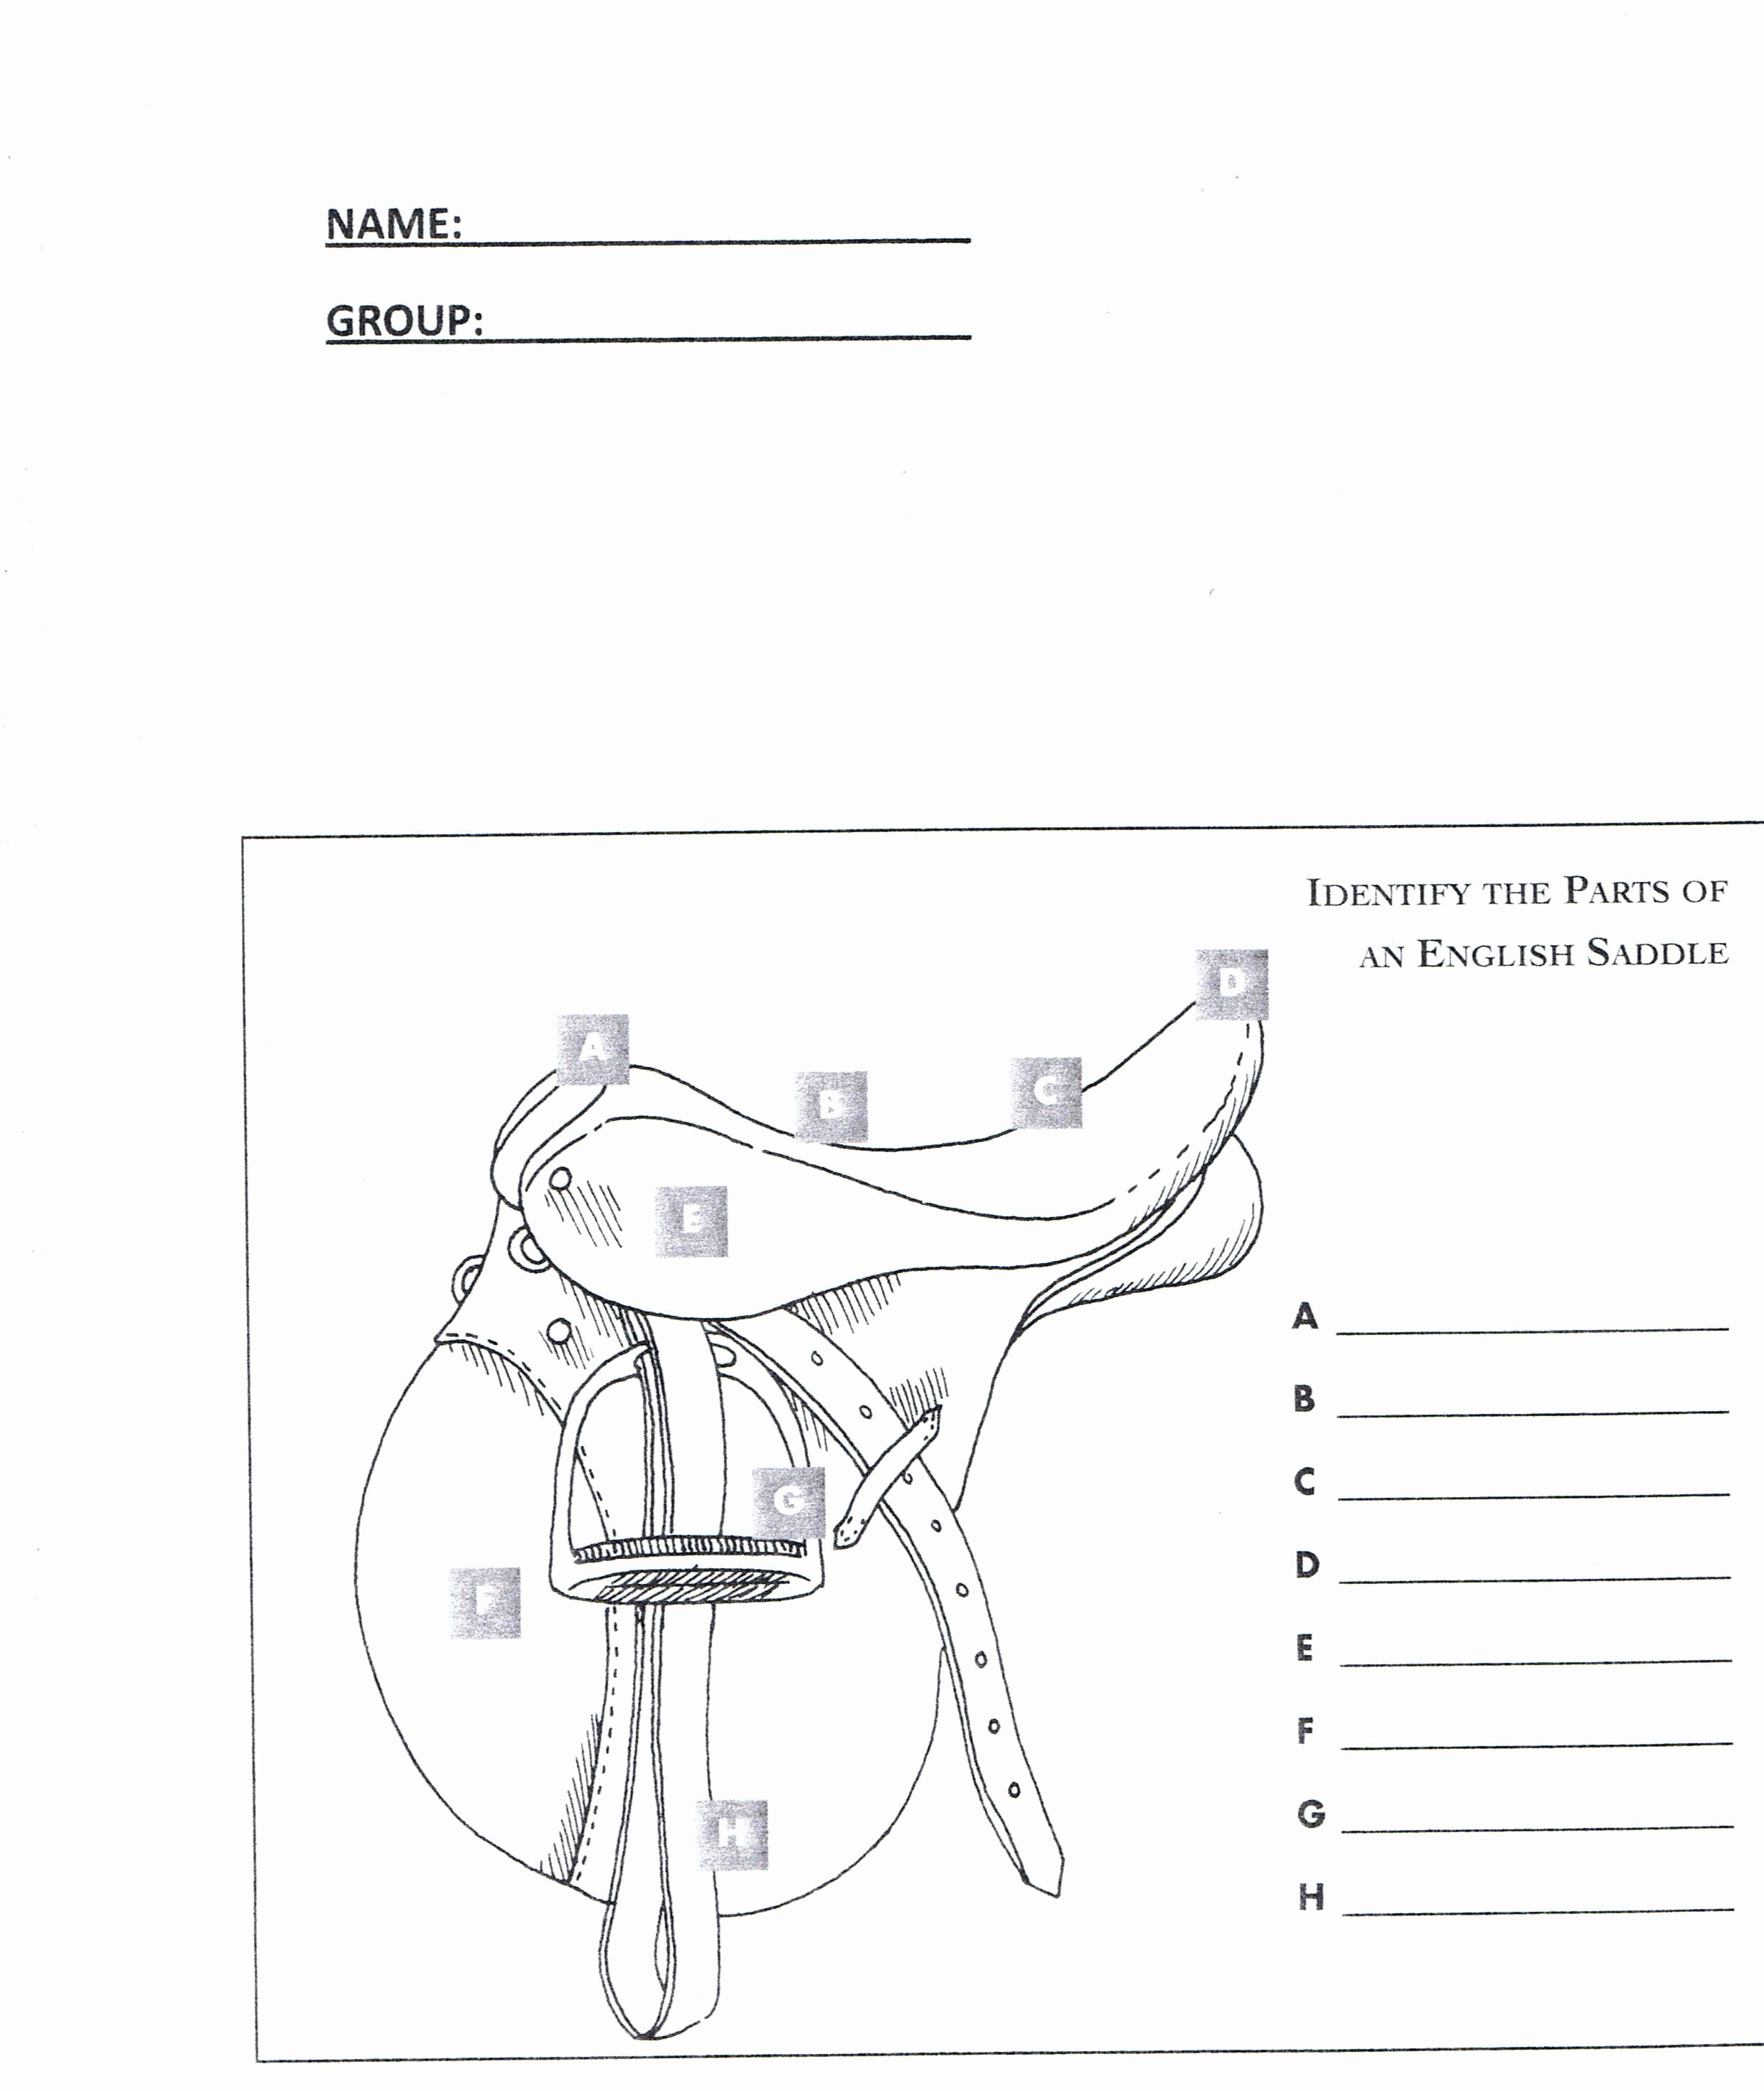 Parts Of the Horse Worksheet Lovely English Saddle Parts Worksheet Workbooks